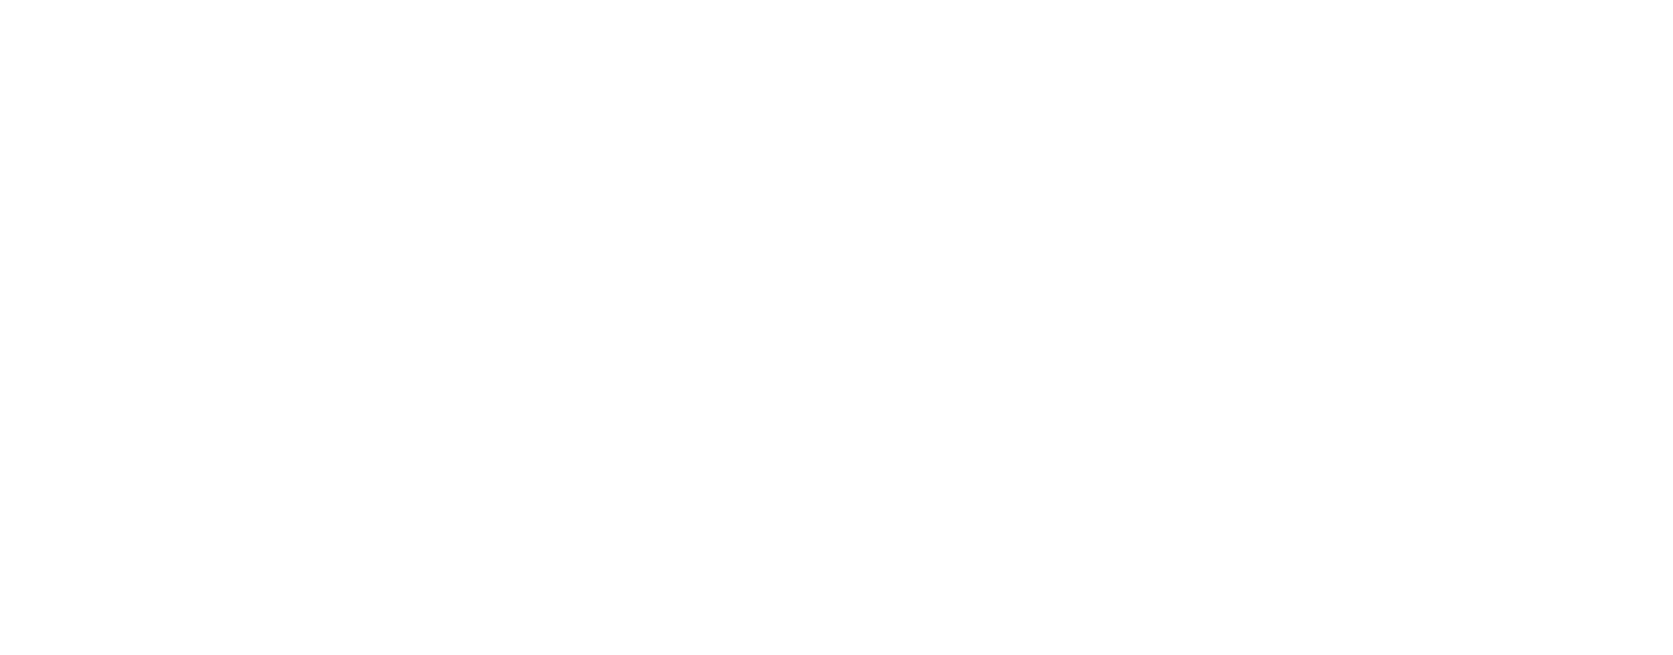 Kidney PSP logo